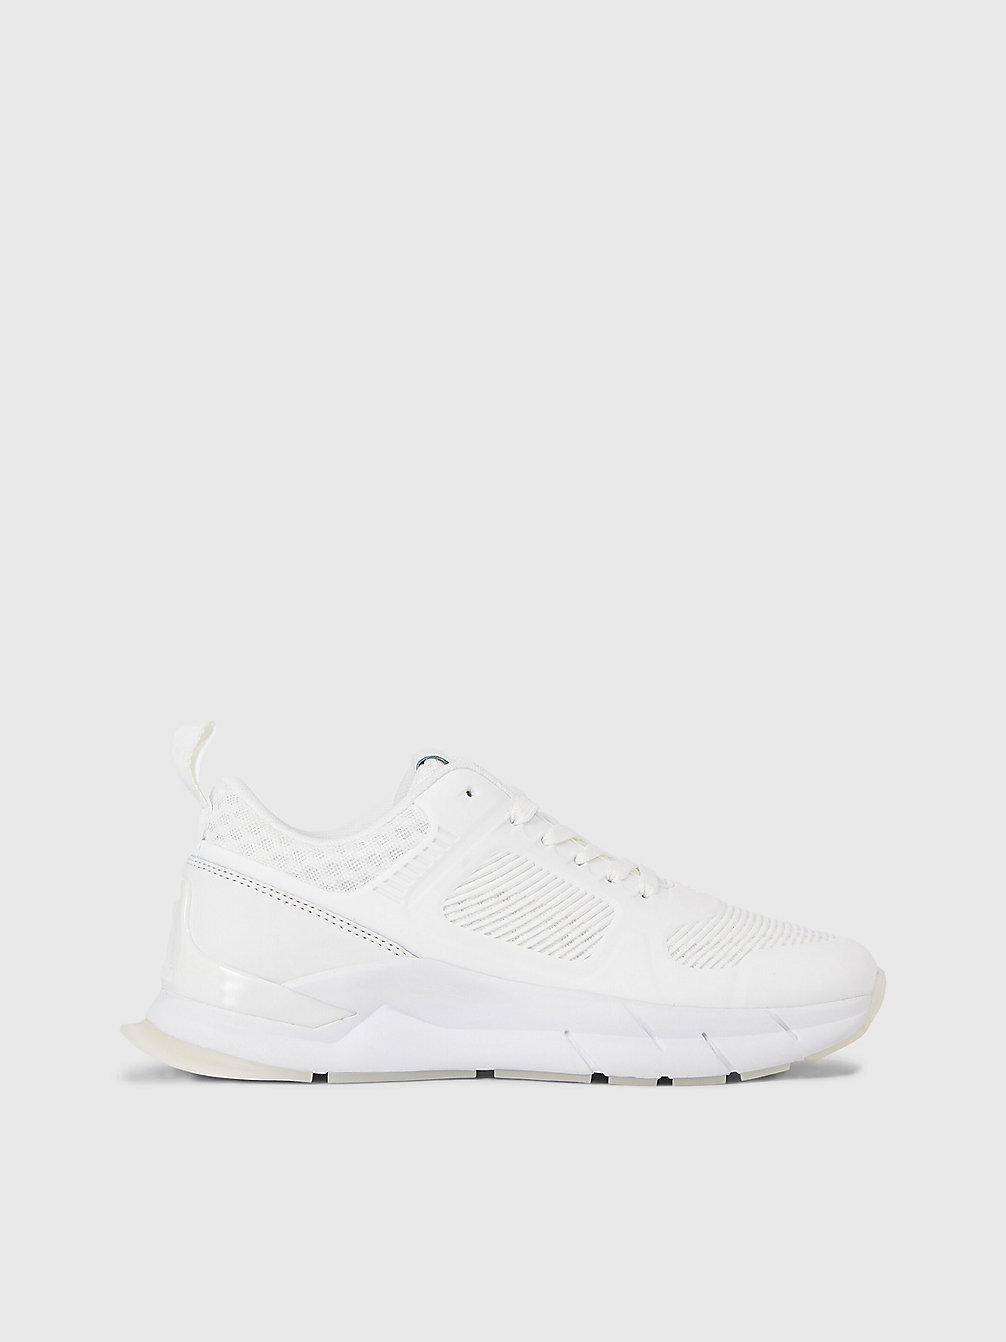 WHITE > Sneakers > undefined Damen - Calvin Klein